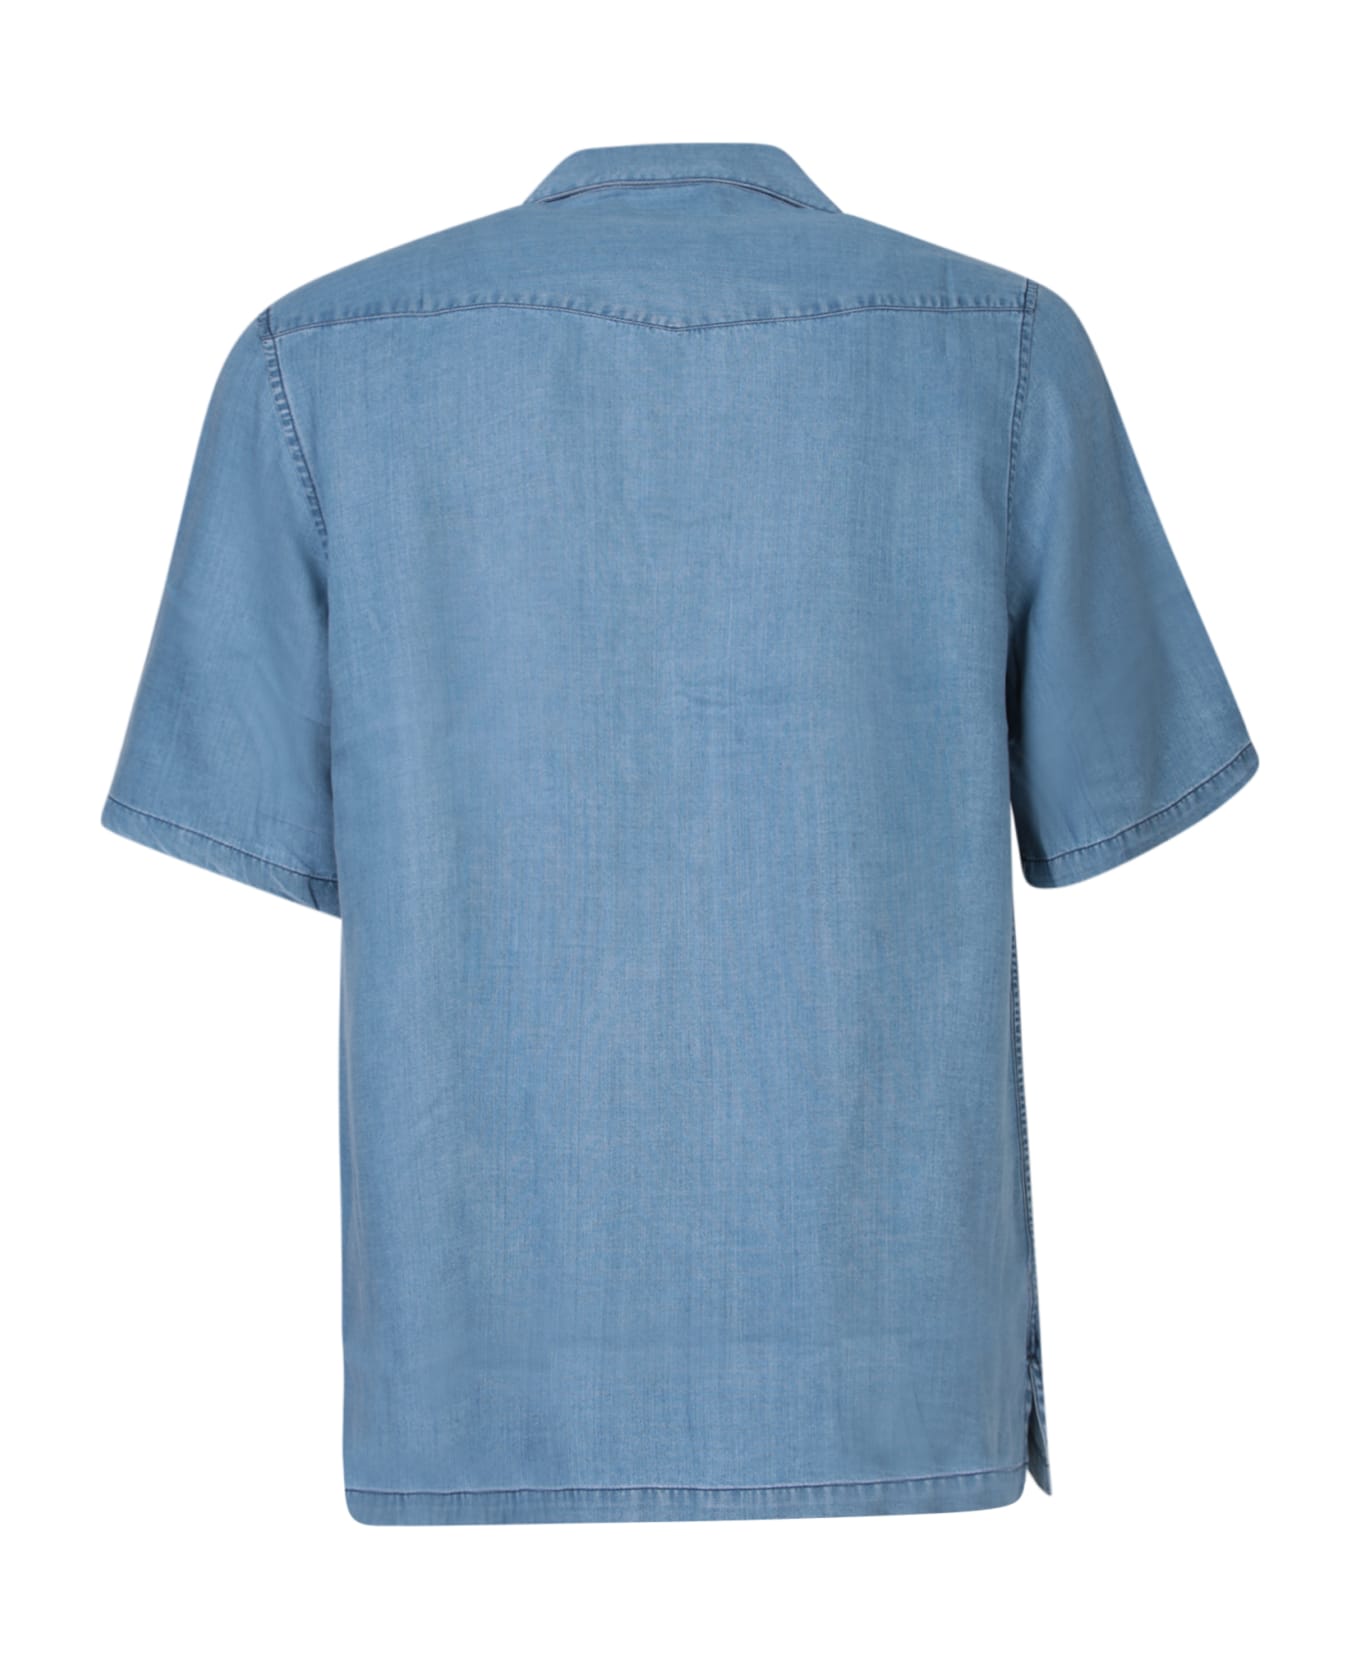 Officine Générale Denim Blue Shirt - Blue